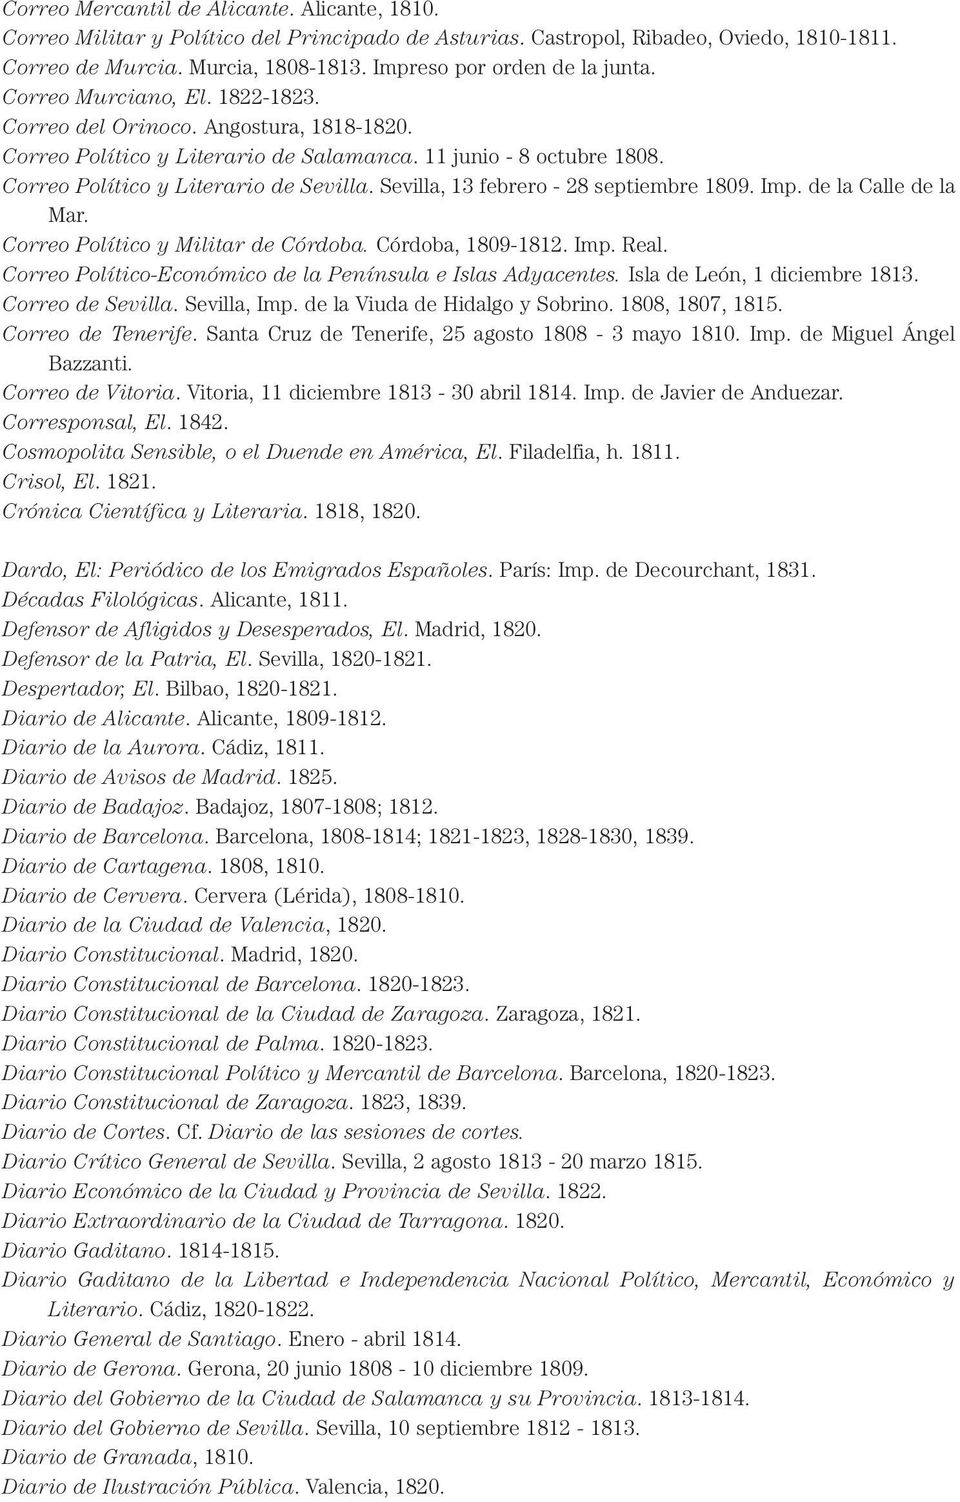 Correo Político y Literario de Sevilla. Sevilla, 13 febrero - 28 septiembre 1809. Imp. de la Calle de la Mar. Correo Político y Militar de Córdoba. Córdoba, 1809-1812. Imp. Real.